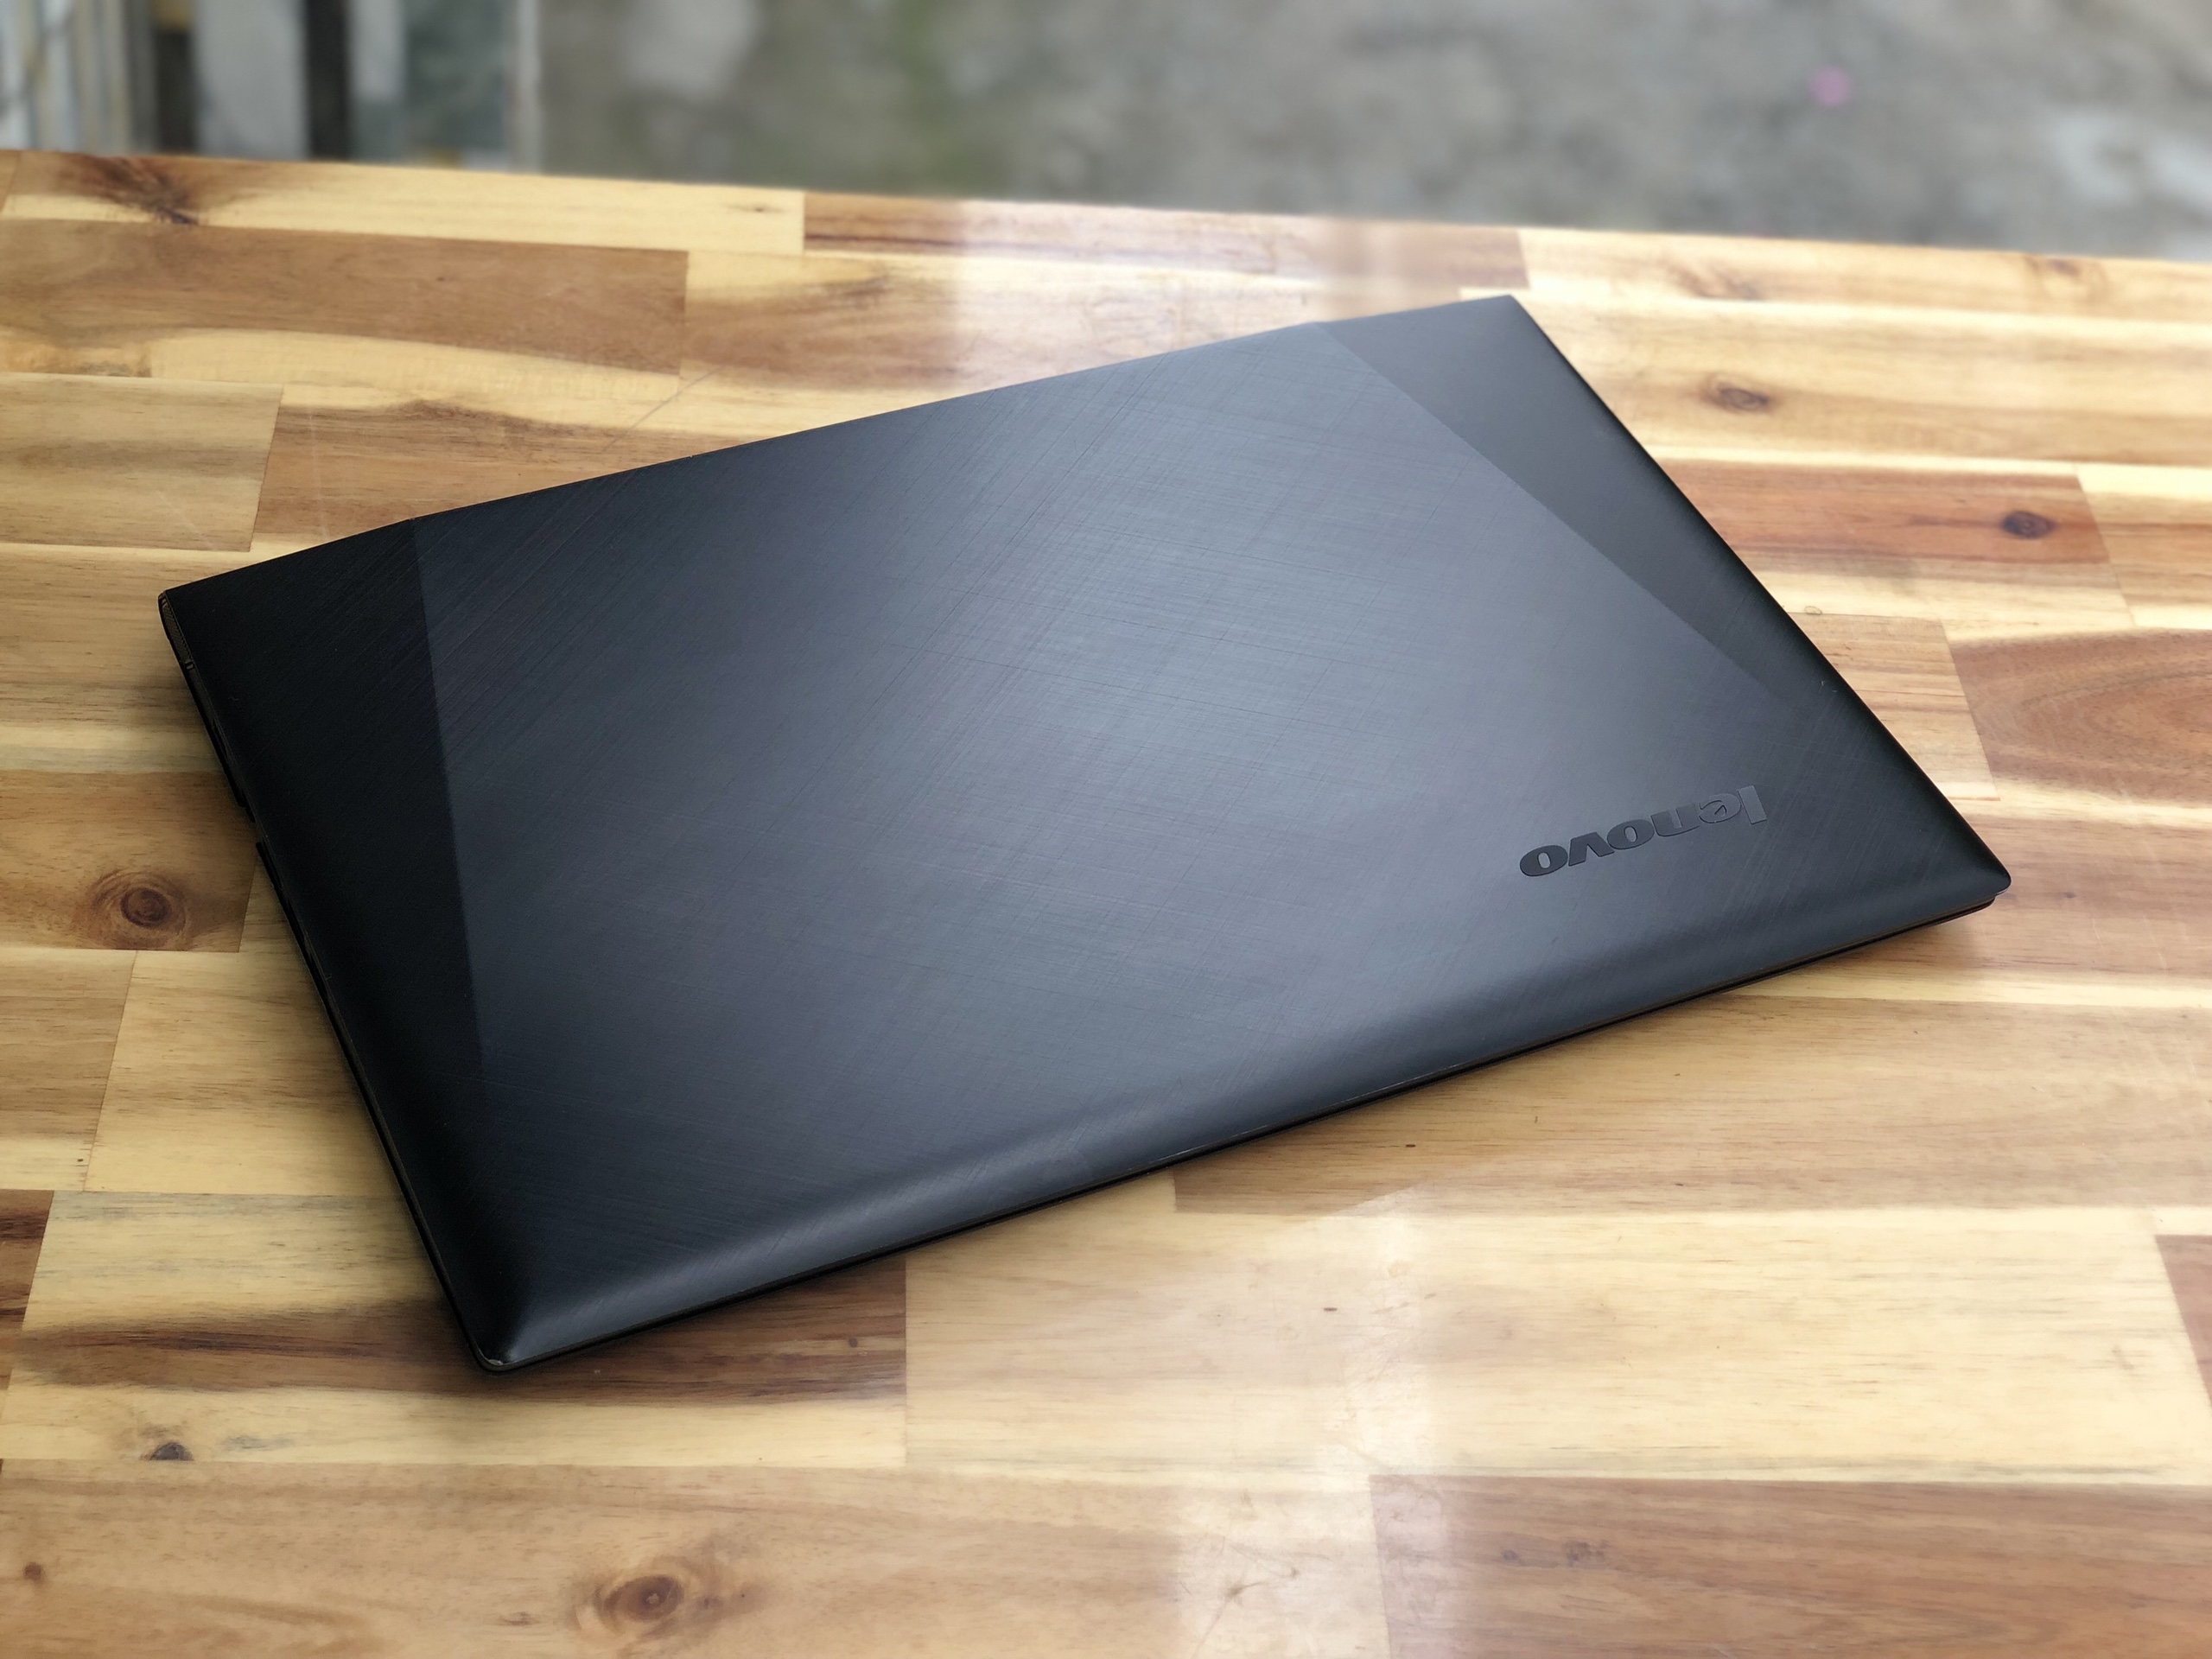 Laptop Lenovo Gaming Y50-70, I7 4720HQ 8G SSD240 GTX960M 4G Full HD Đẹp zin 100% giá rẻ1